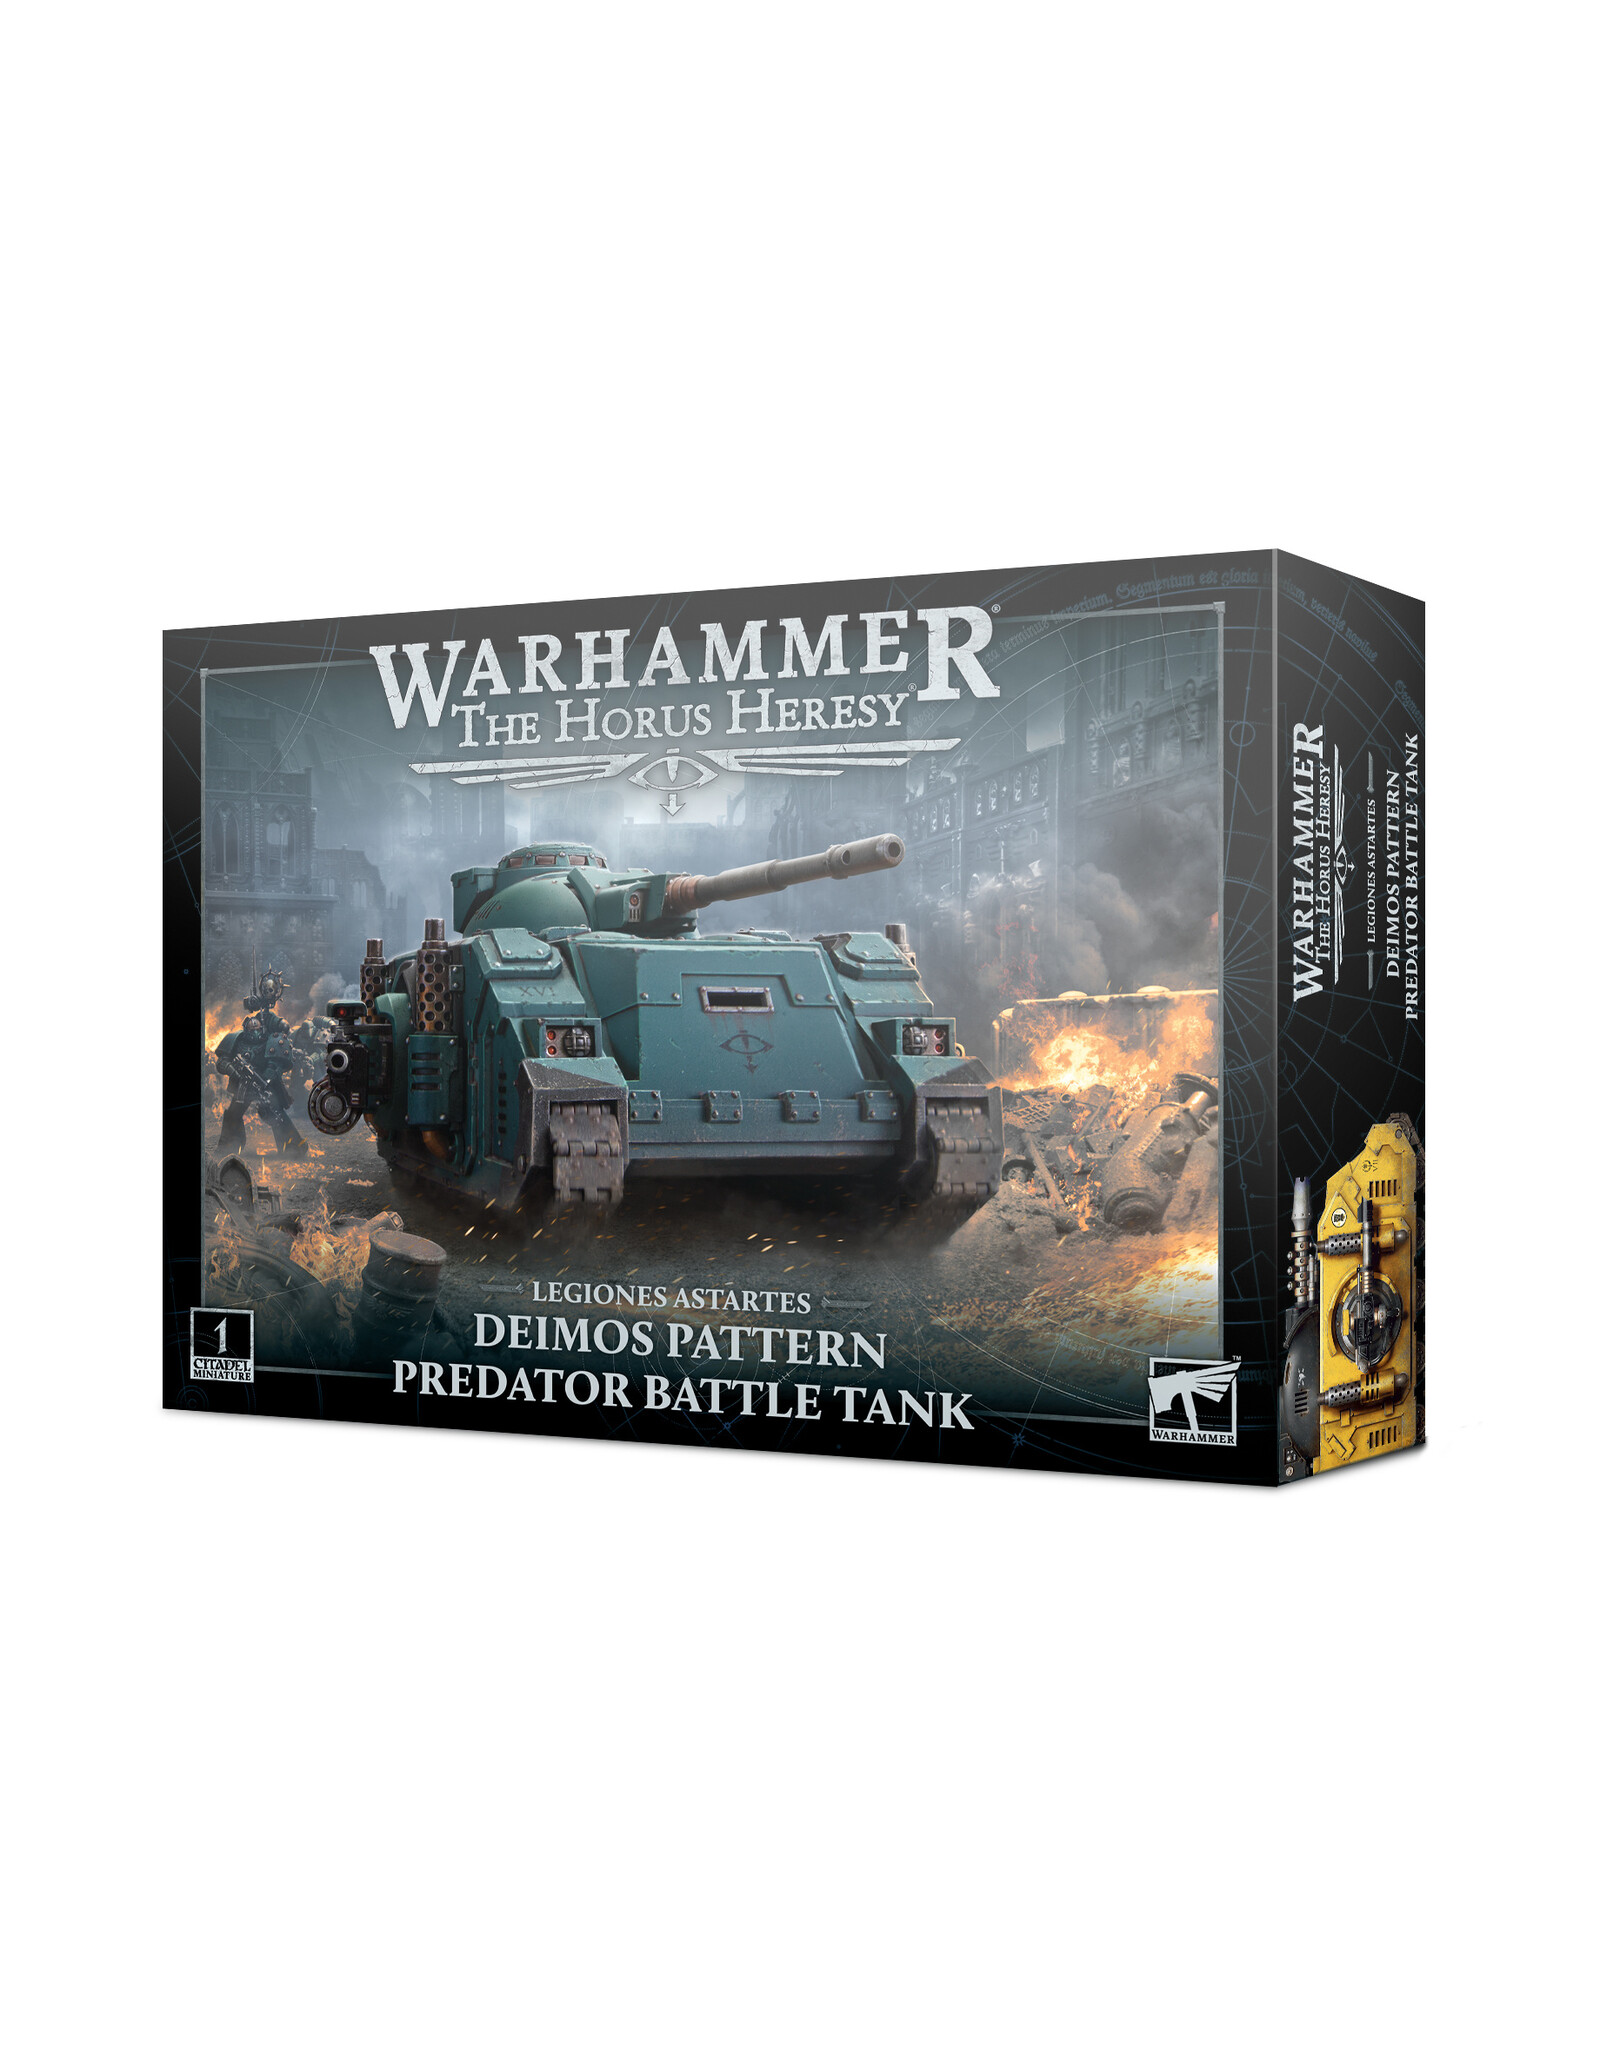 Warhammer 40K Legiones Astartes: Predator Battle Tank